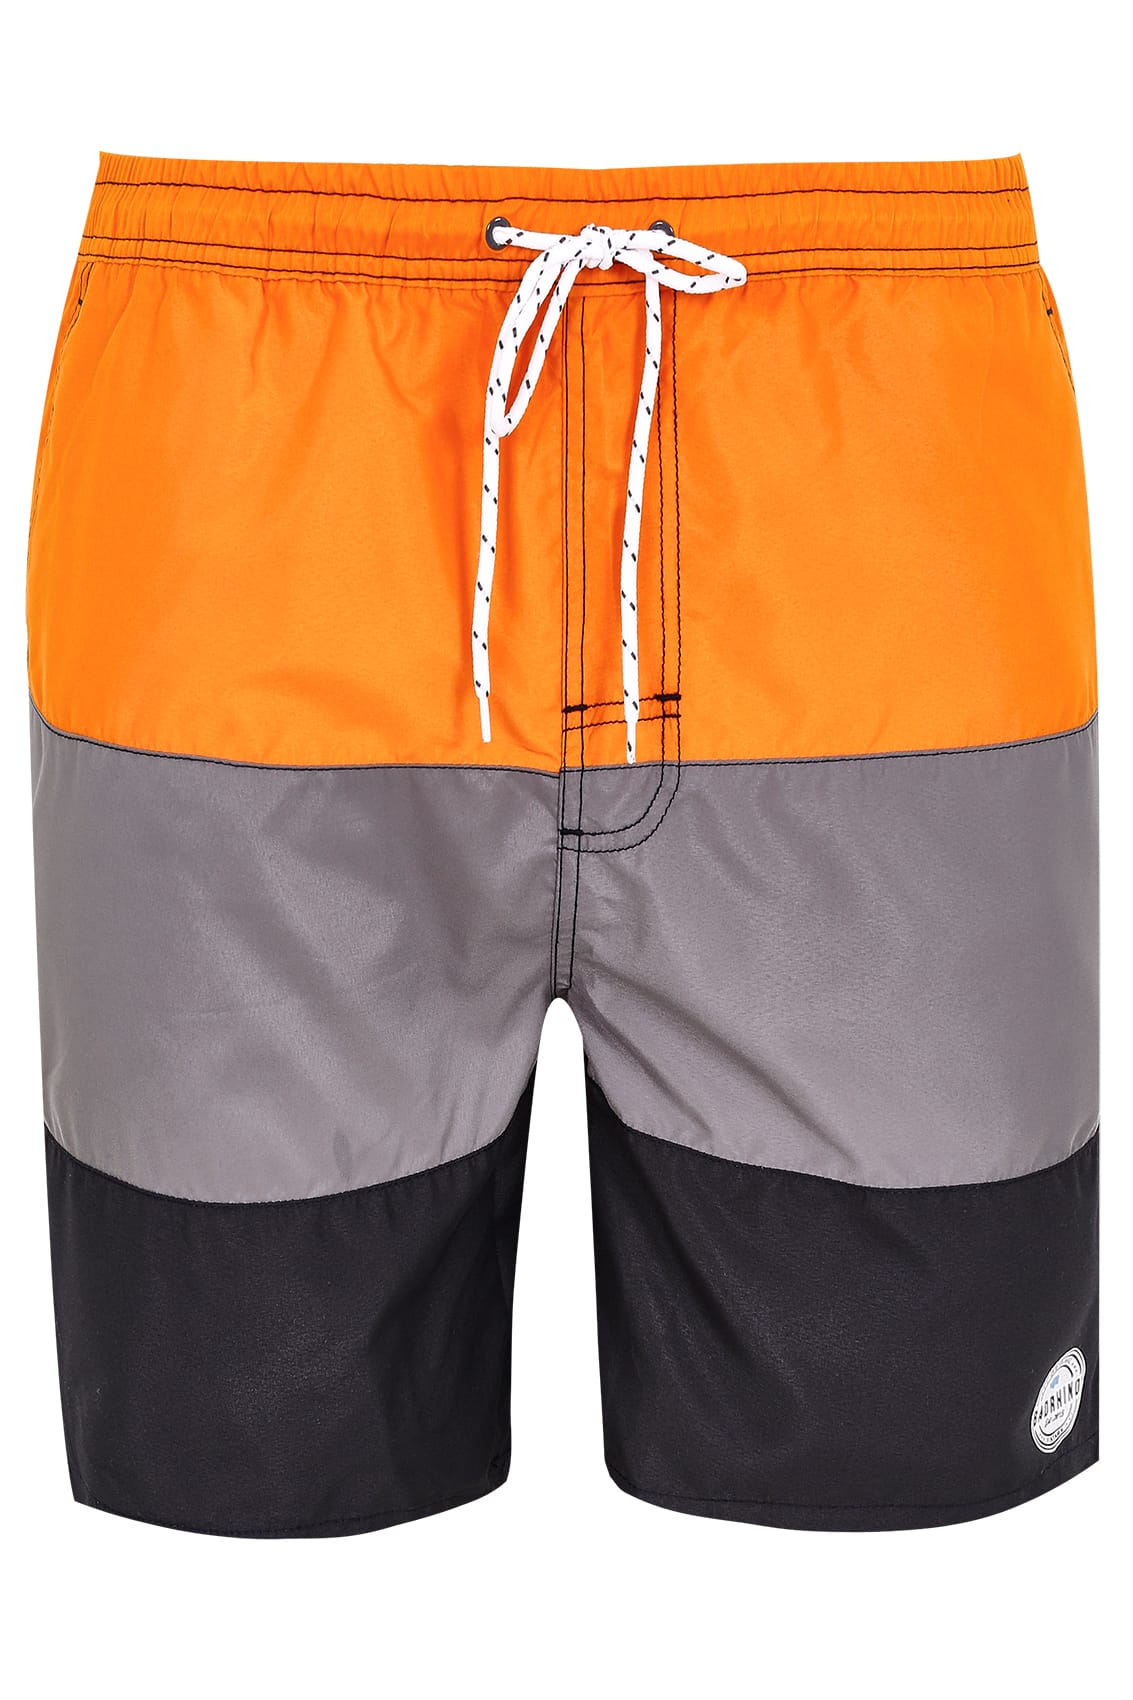 BadRhino Orange, Grey & Black Colour Block Swim Shorts extra large ...